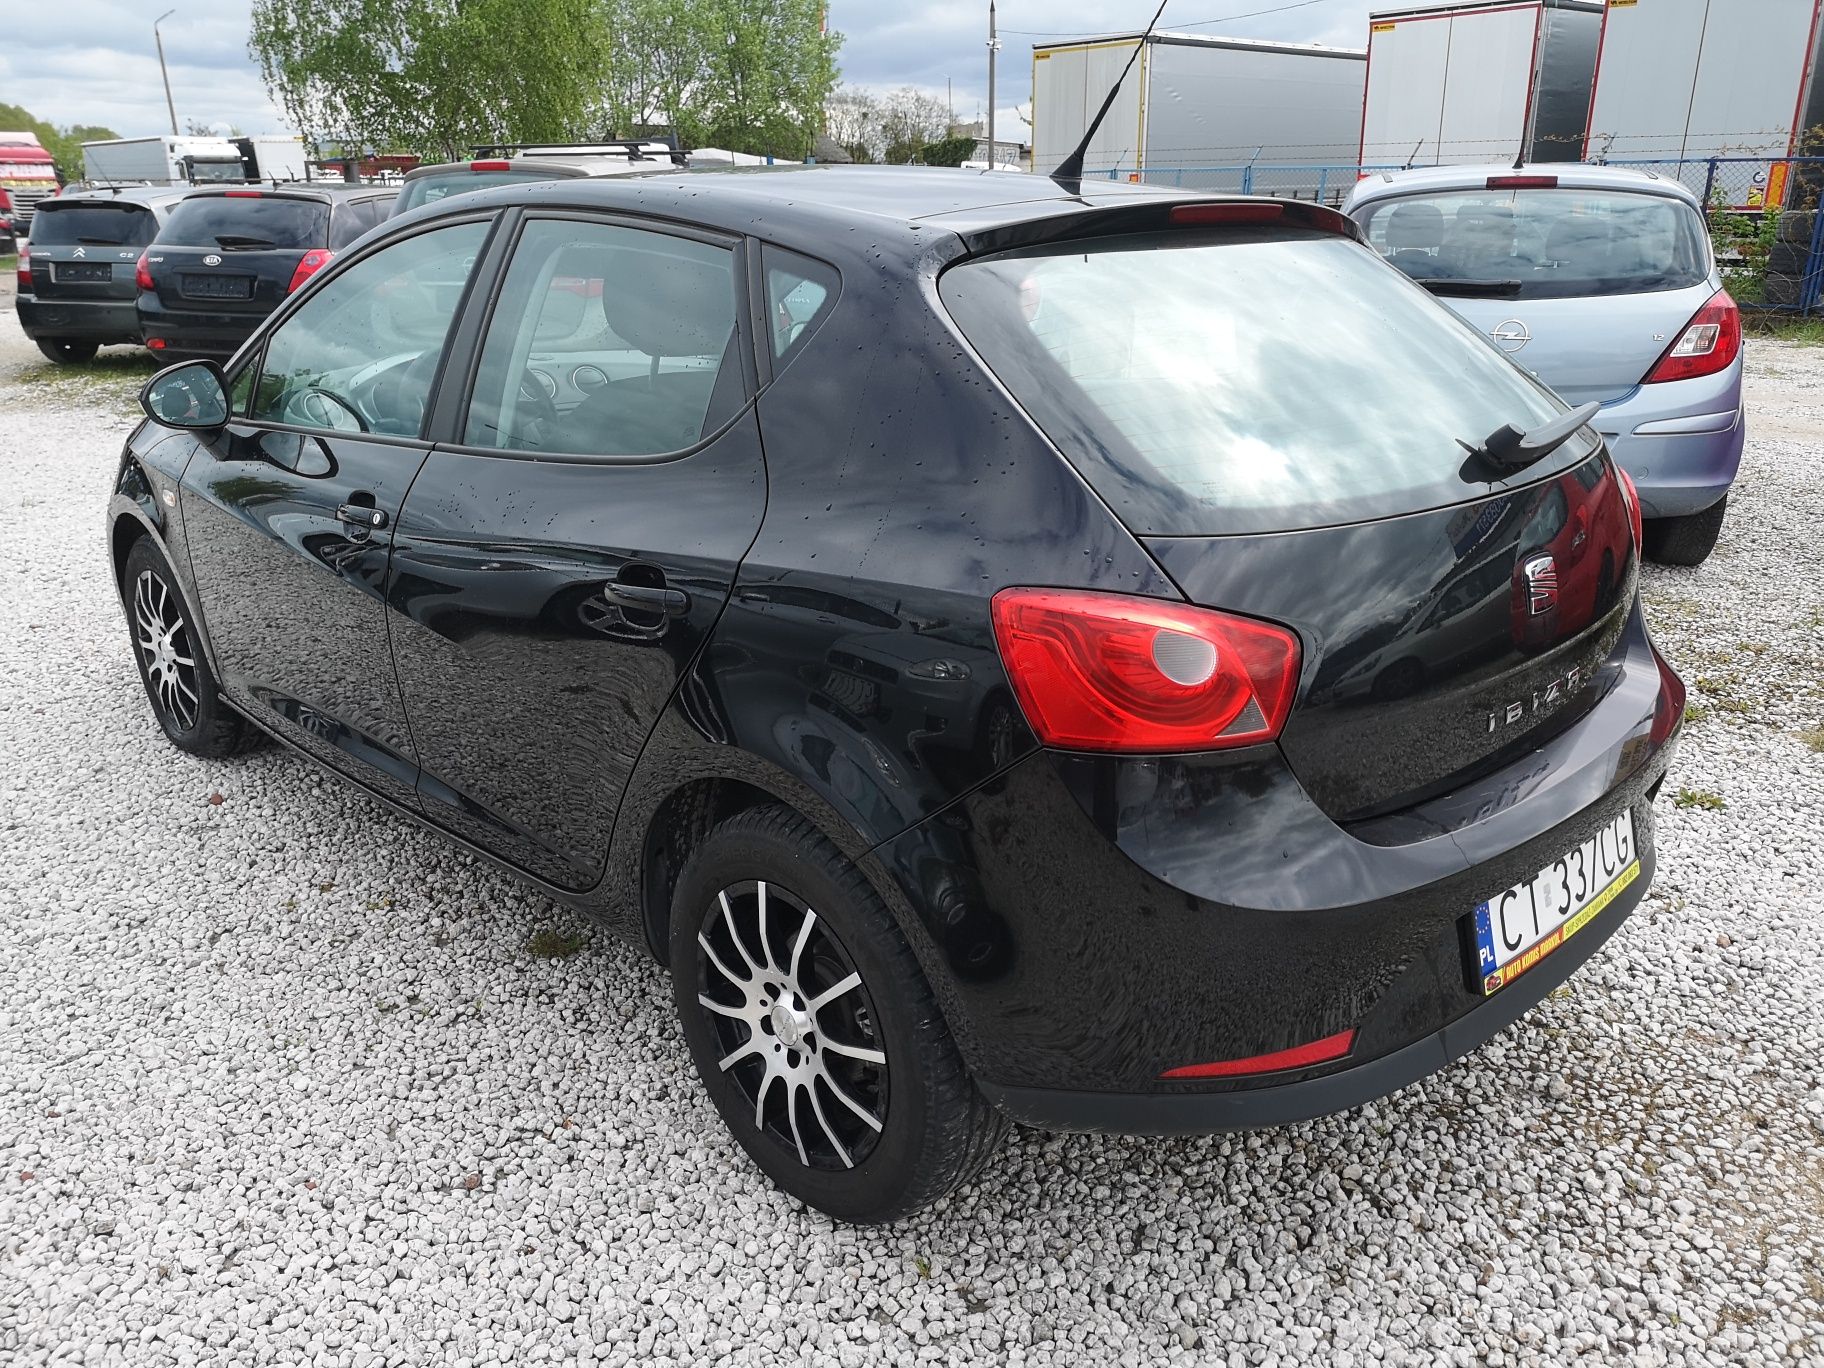 Seat Ibiza IV, 1.4 benzyna, 5 drzwi, Sprowadzona, Zarejestrowana